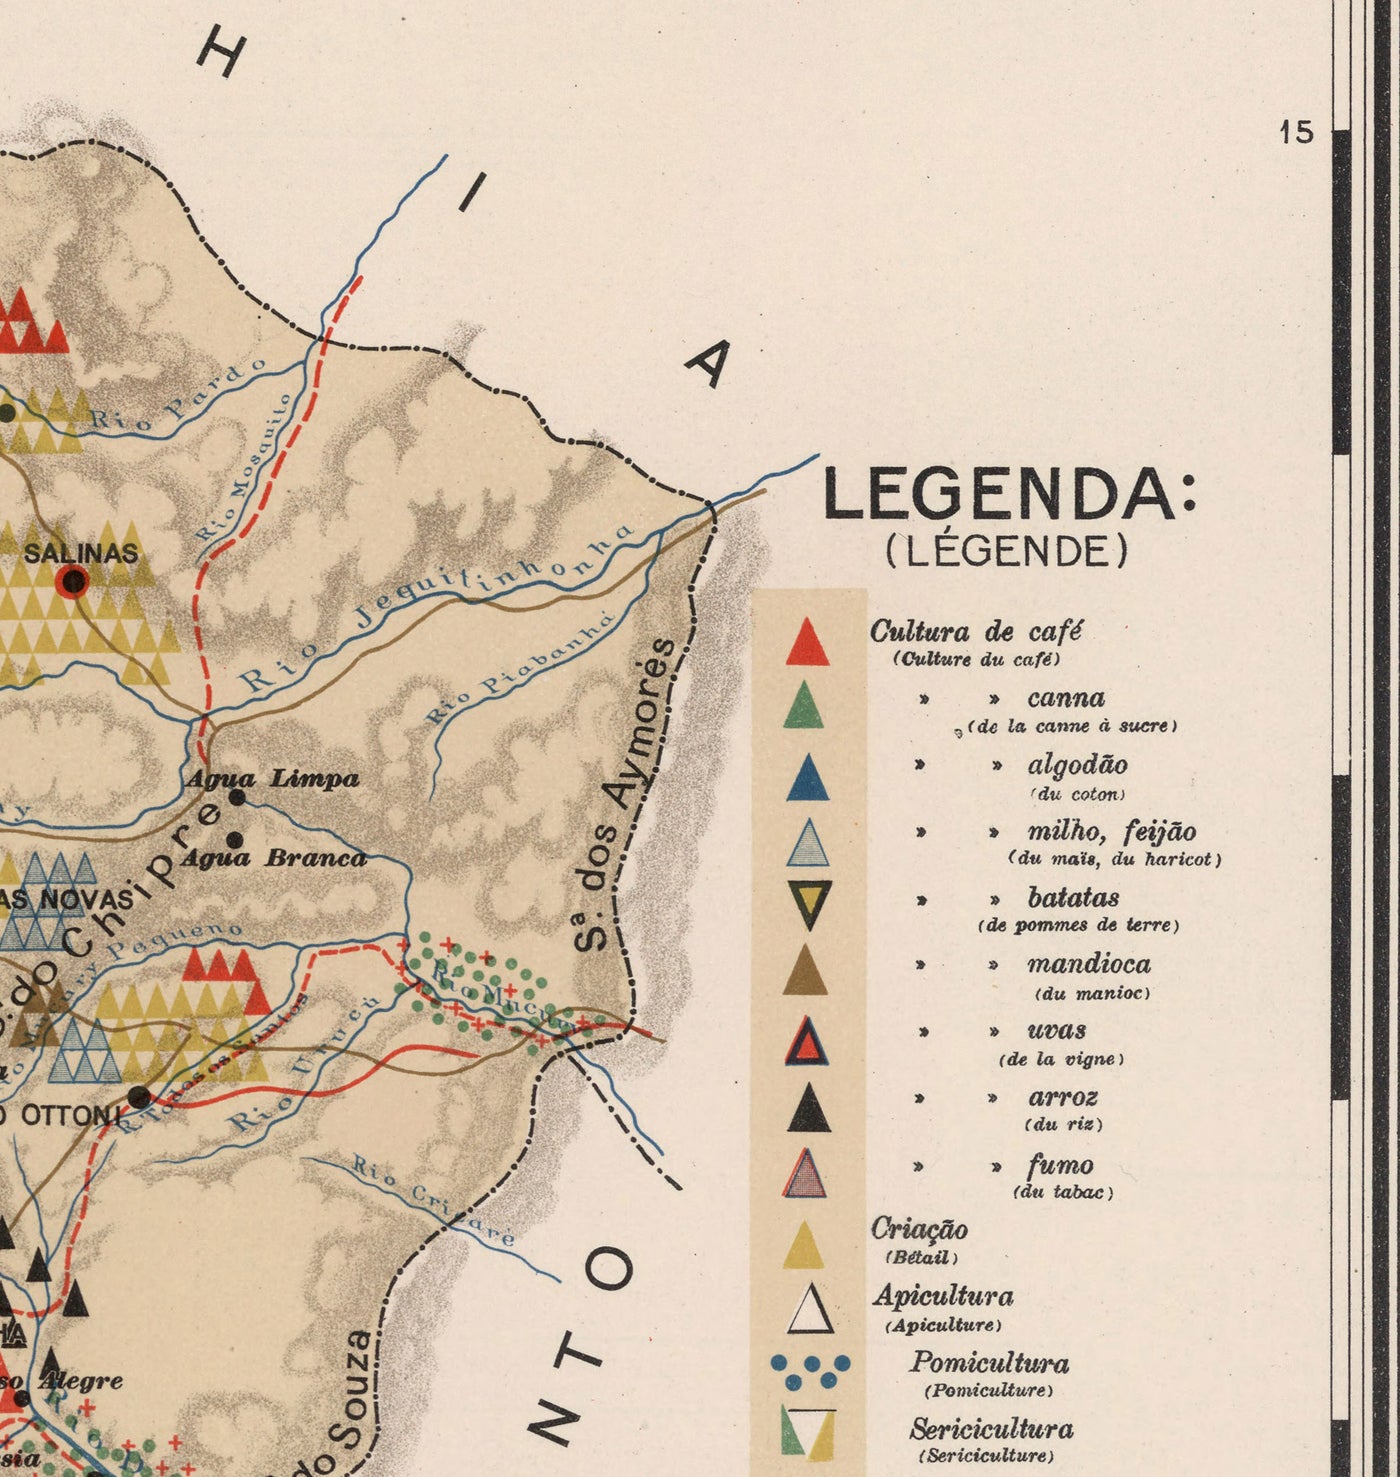 Alte Karte von Minas Gerais, Brasilien im Jahr 1908 - Landwirtschaft, Geologie, Gestein, Boden - Belo Horizonte, Uberlandia, Uberaba, Juiz de Fora, Curvelo